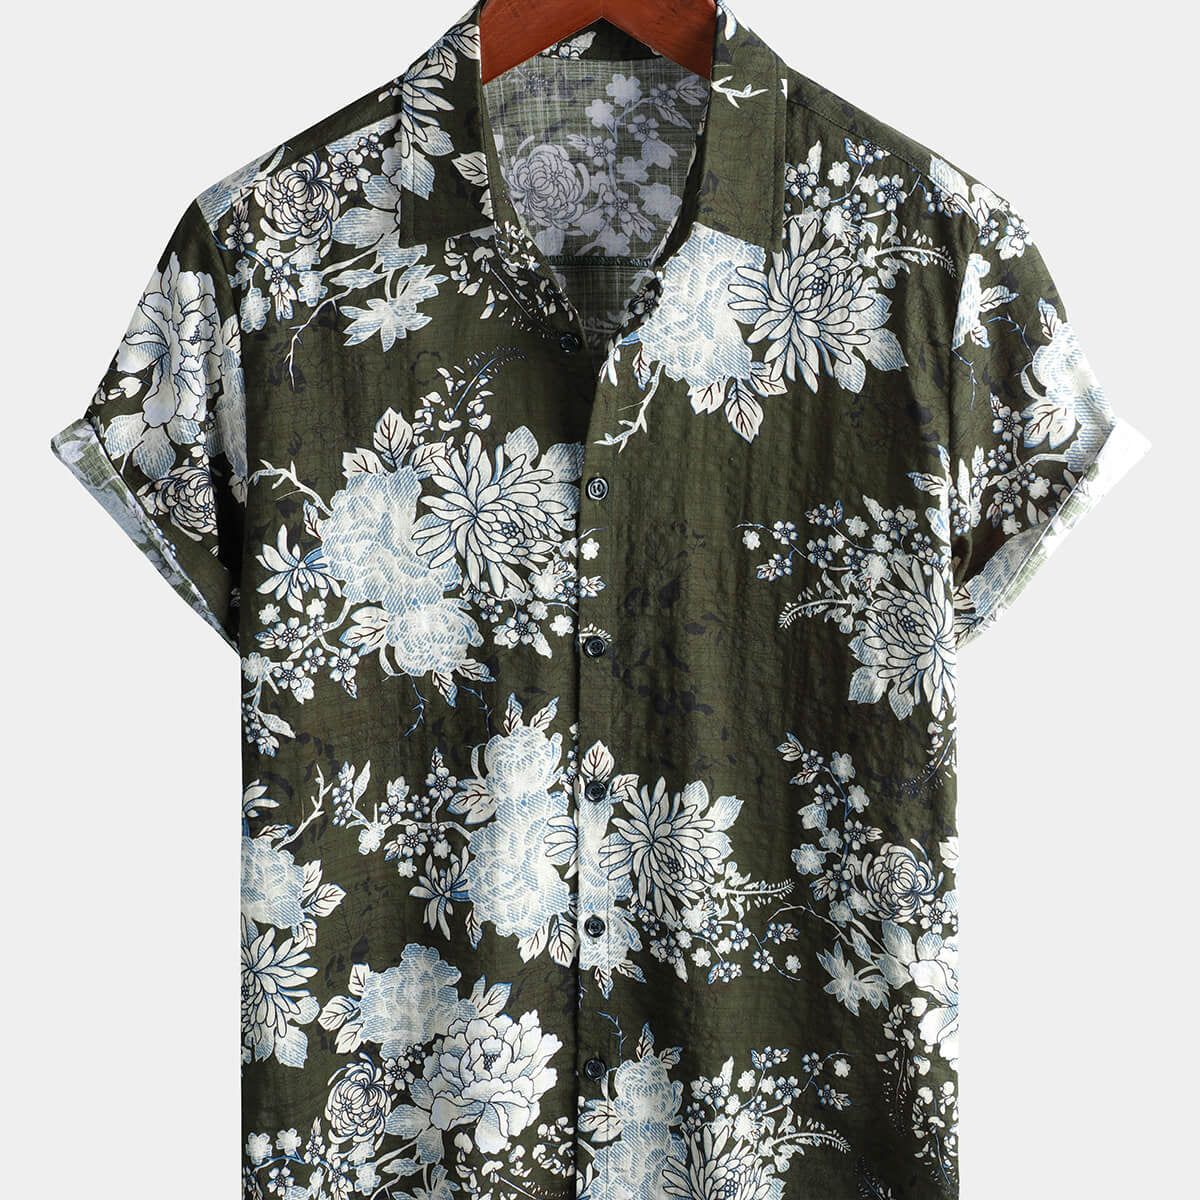 Men's Green Floral Summer Cotton Short Sleeve Shirt